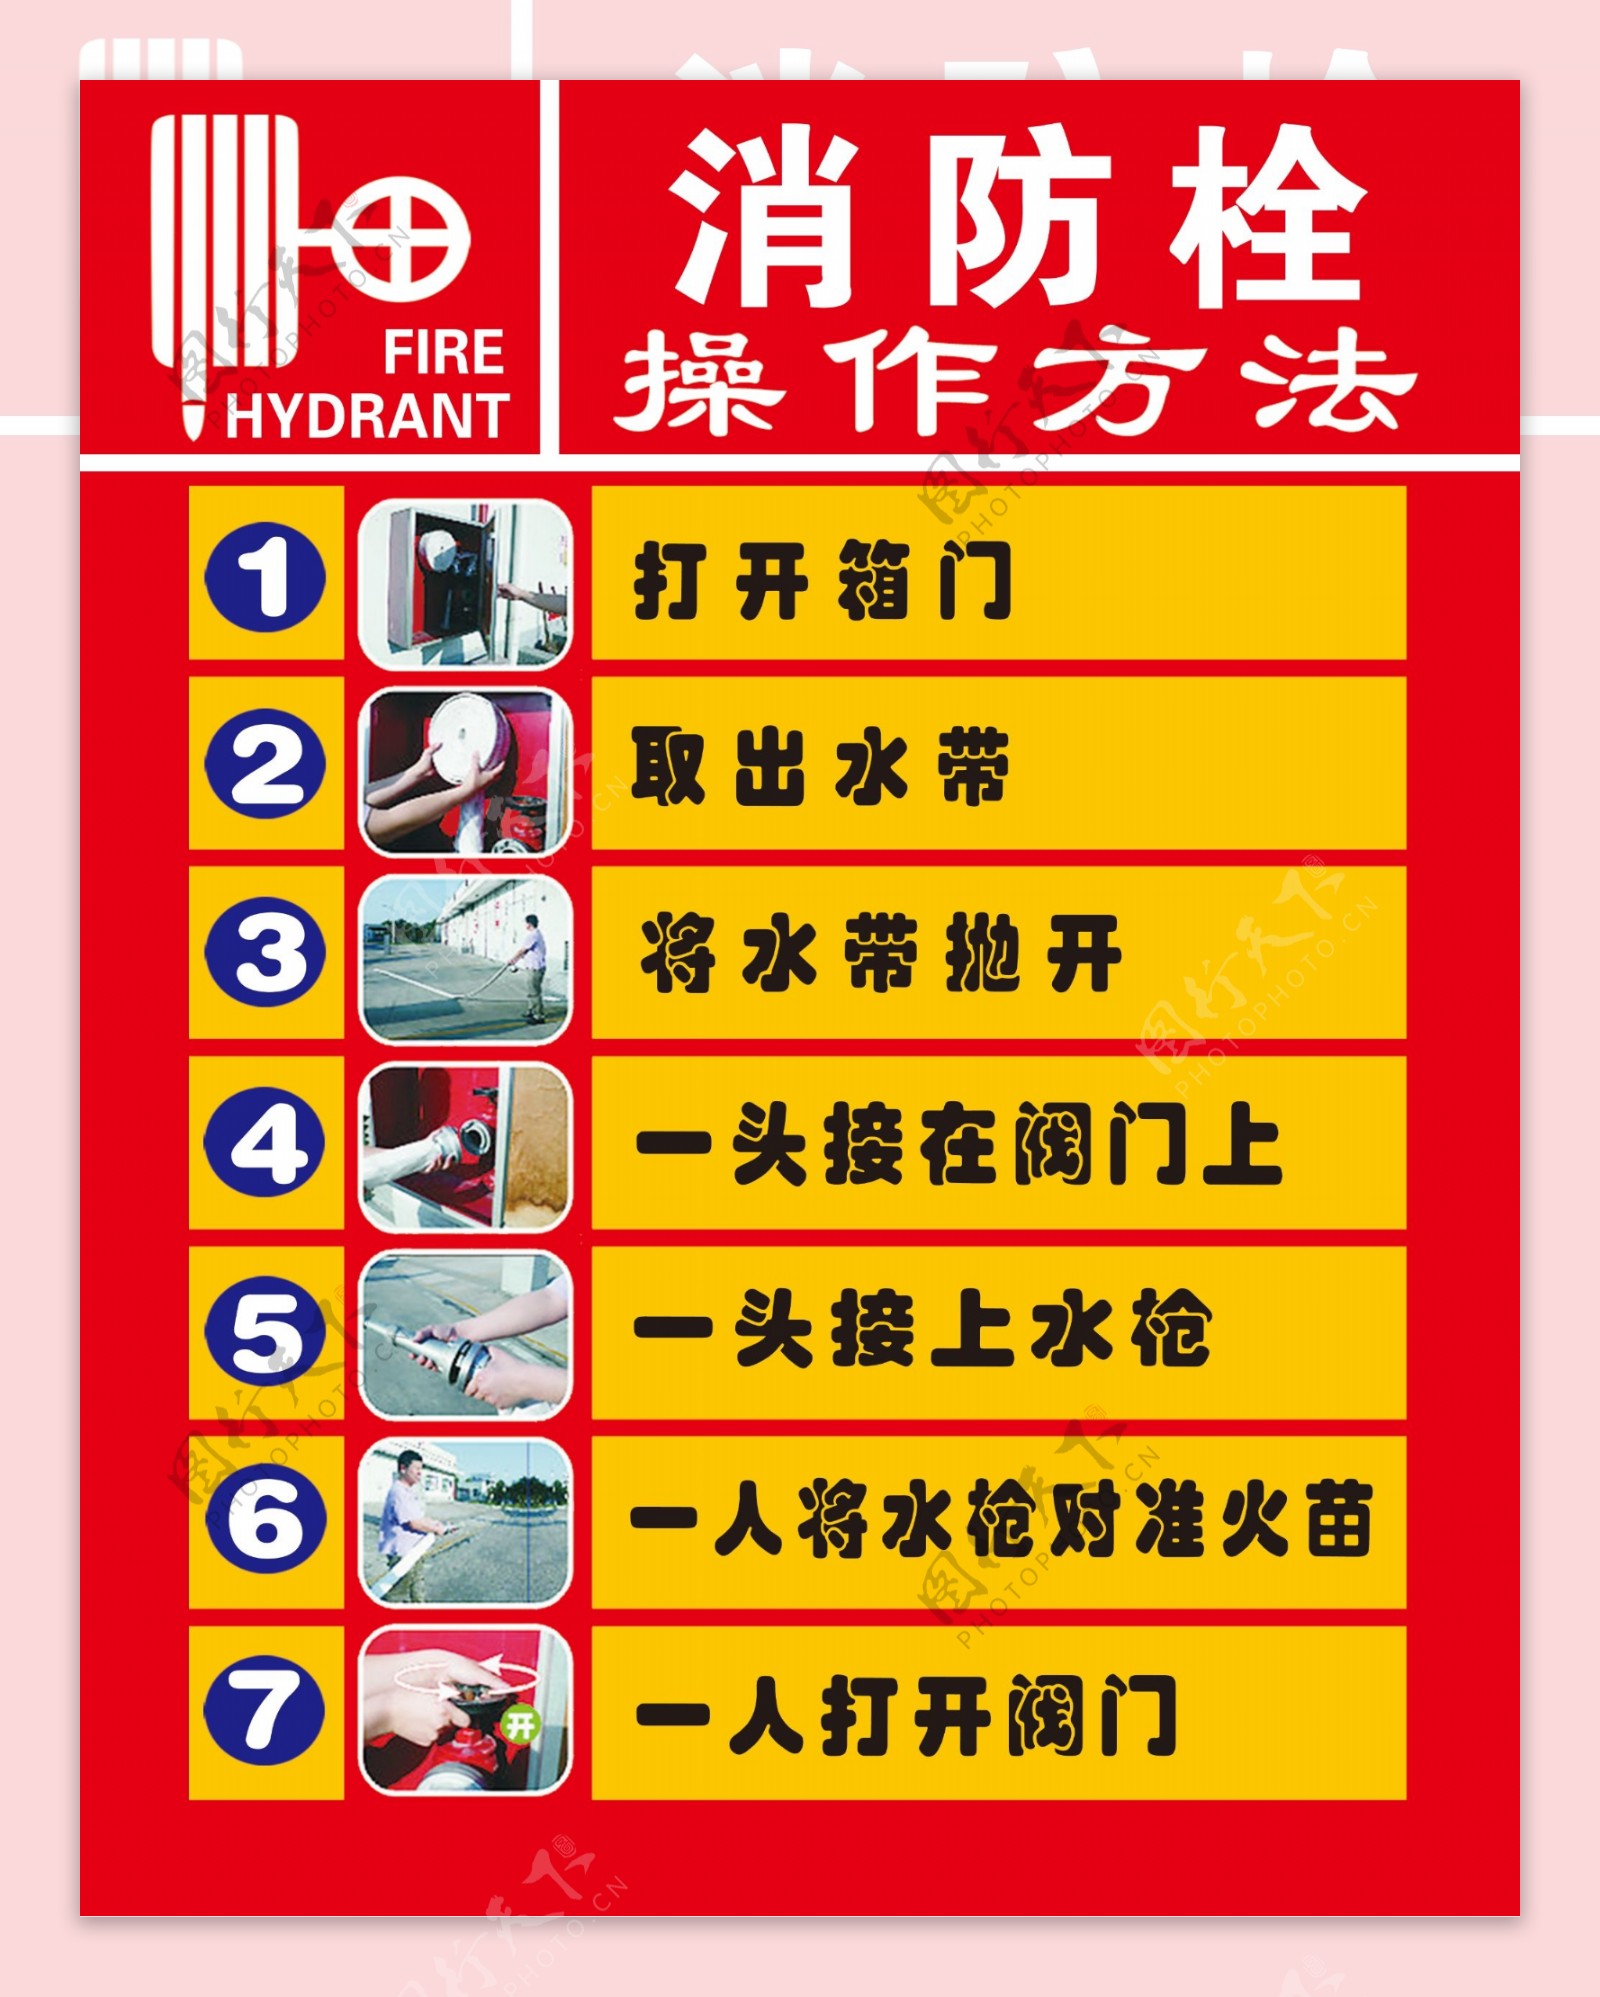 消防栓七步法